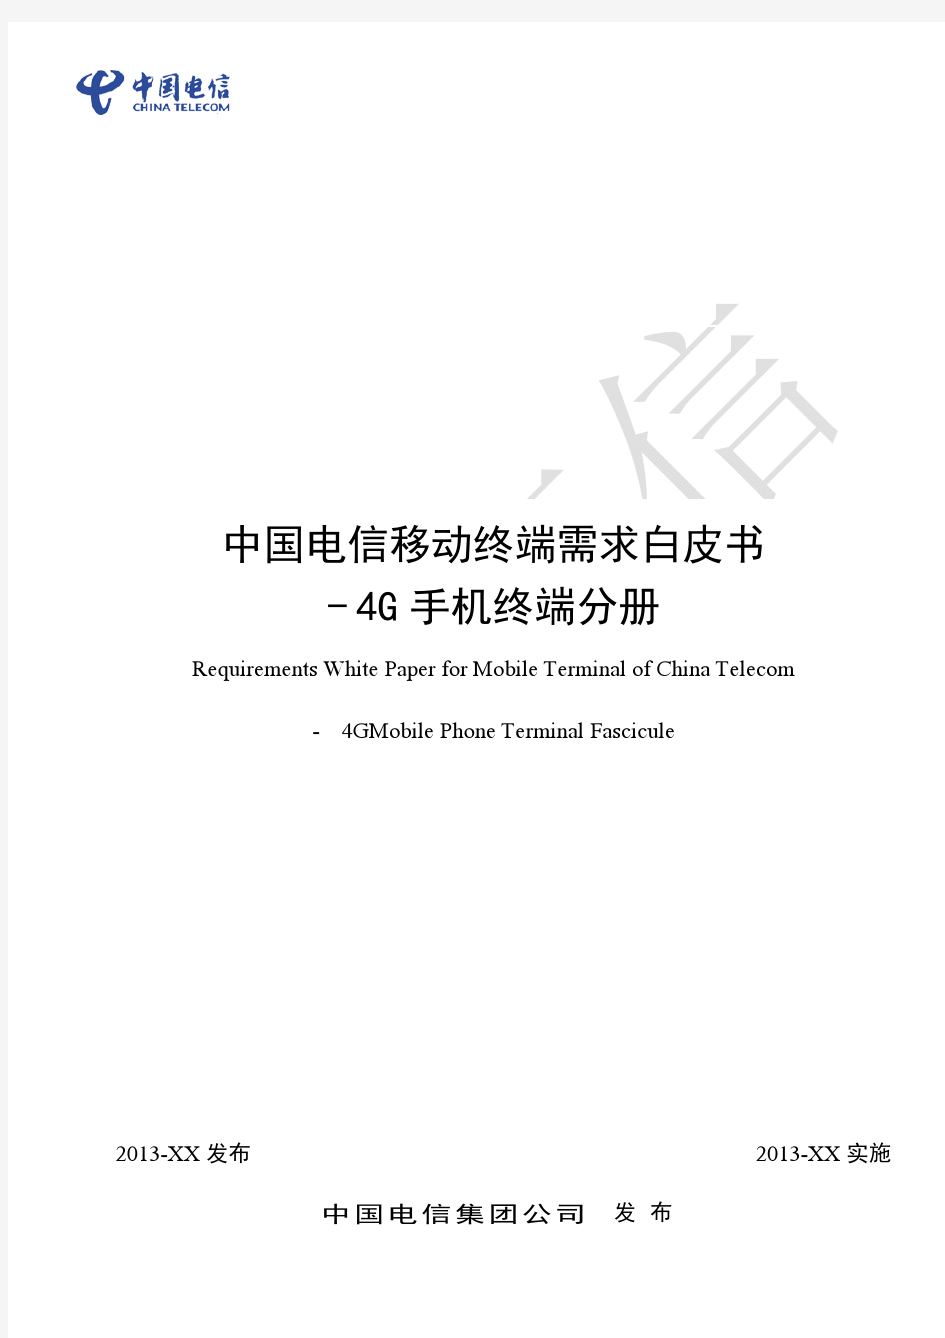 中国电信移动终端需求白皮书-4G手机终端(加TDD、SRLTE)分册